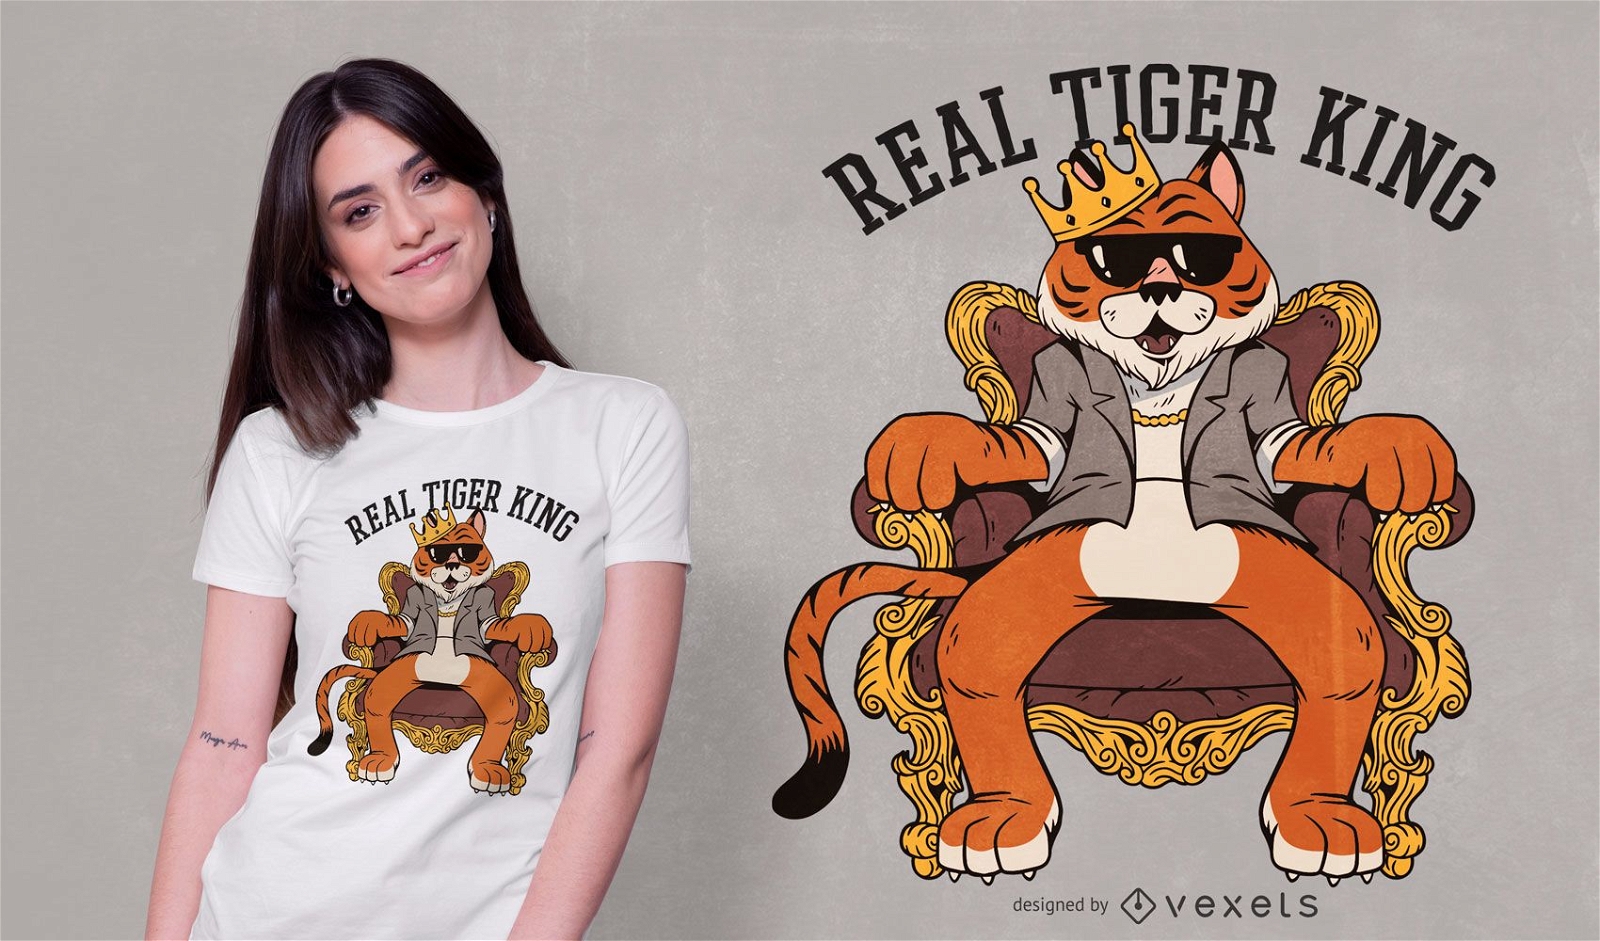 Dise?o de camiseta real tiger king